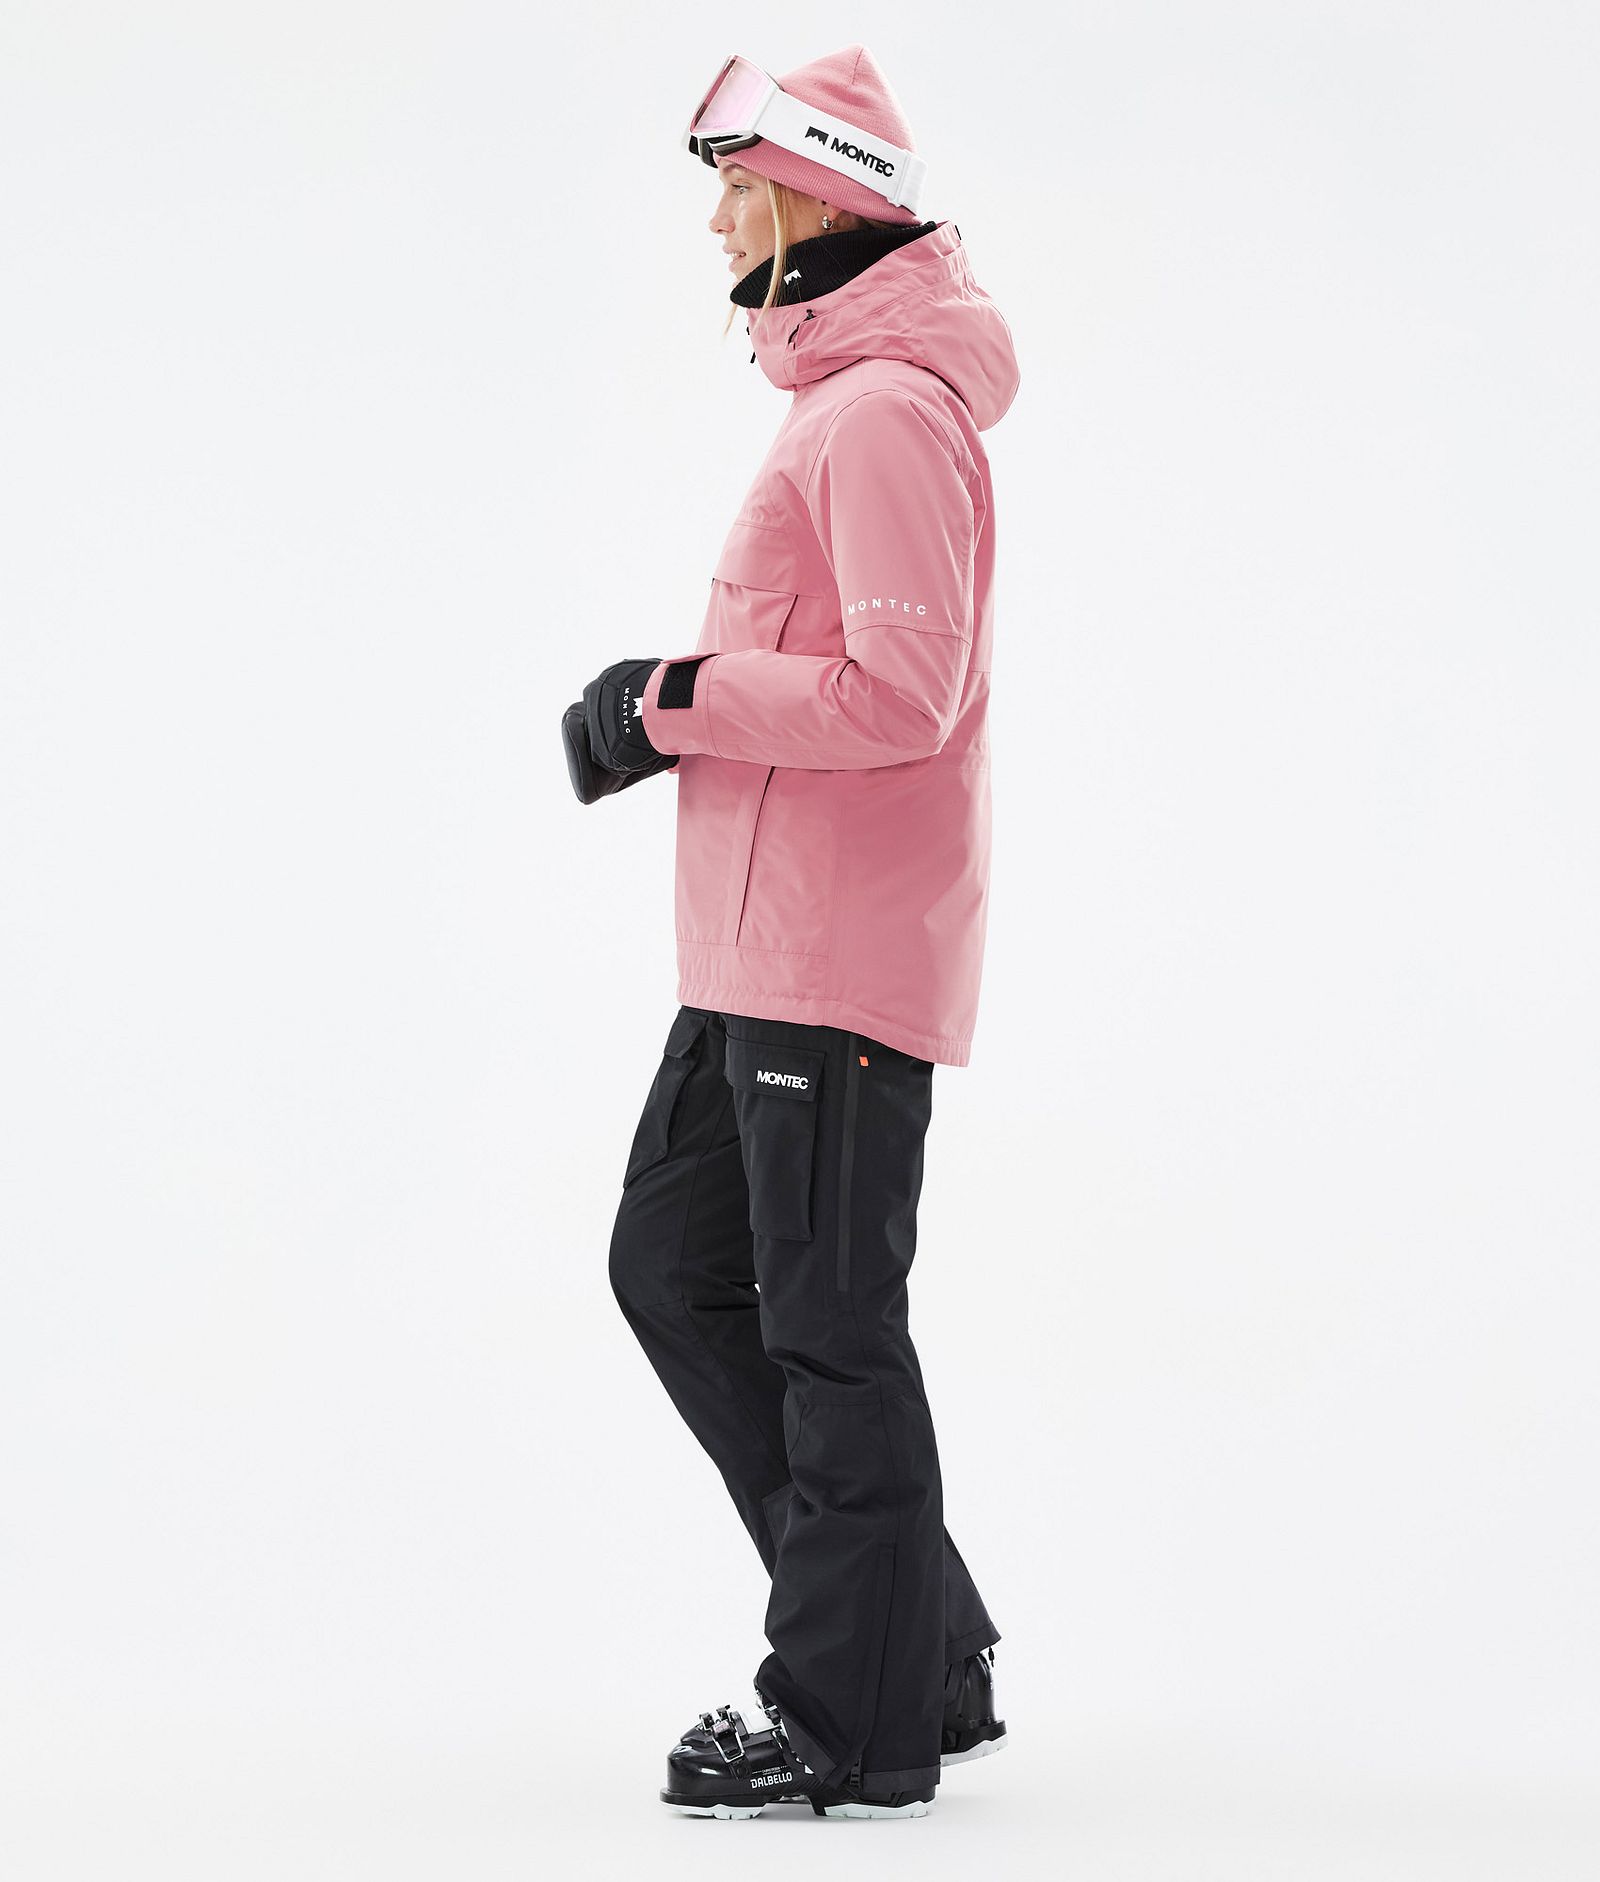 Montec Dune W Veste de Ski Femme Pink